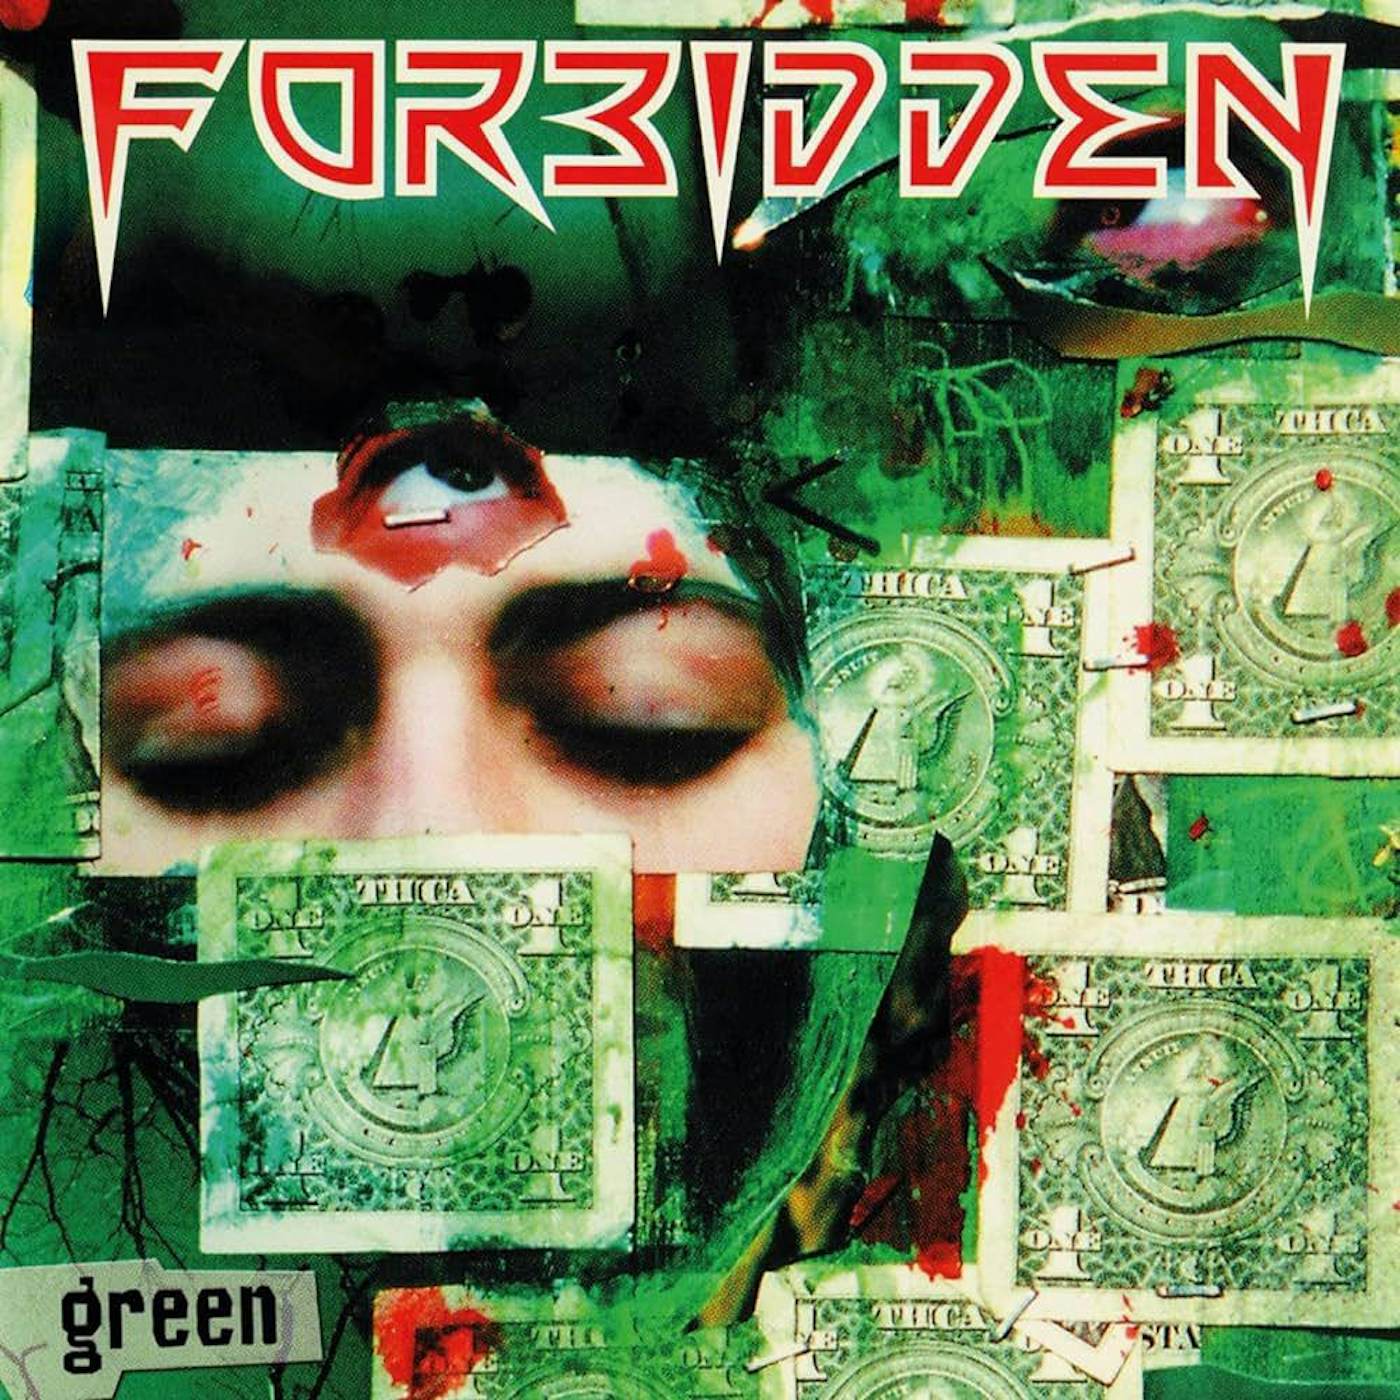 Forbidden GREEN Vinyl Record